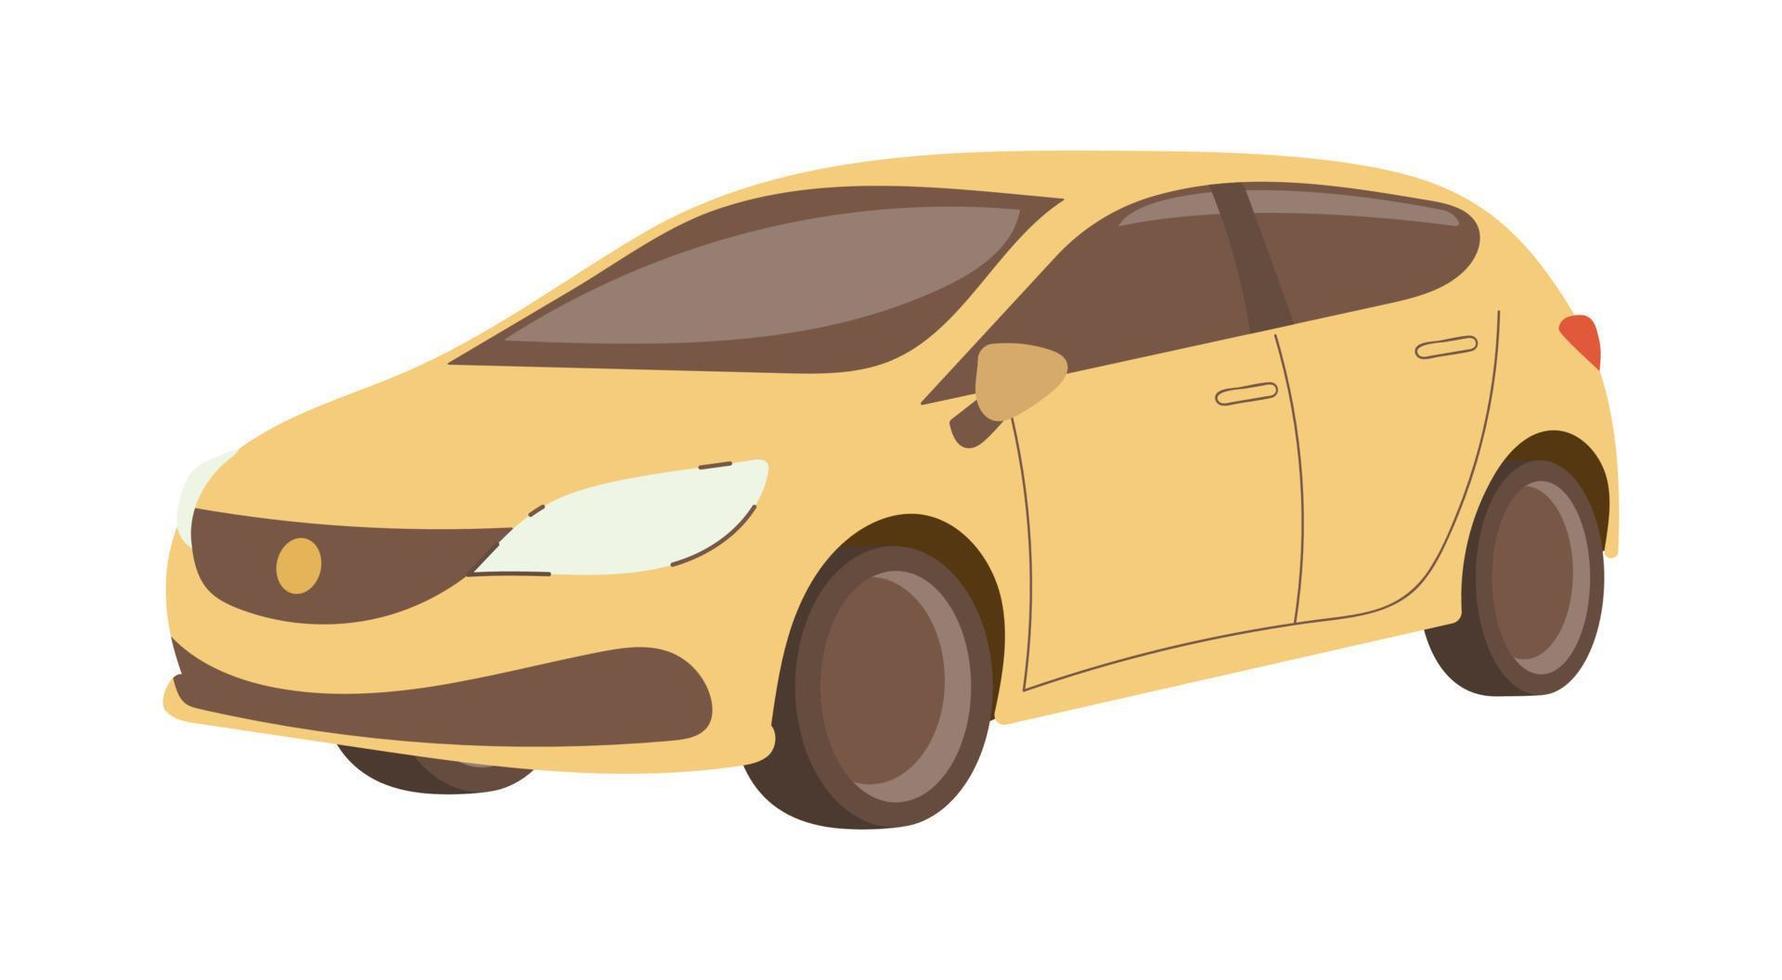 platt gul bil trekvart främre se, halvkombi, isolerat på vit bakgrund. vektor illustration.